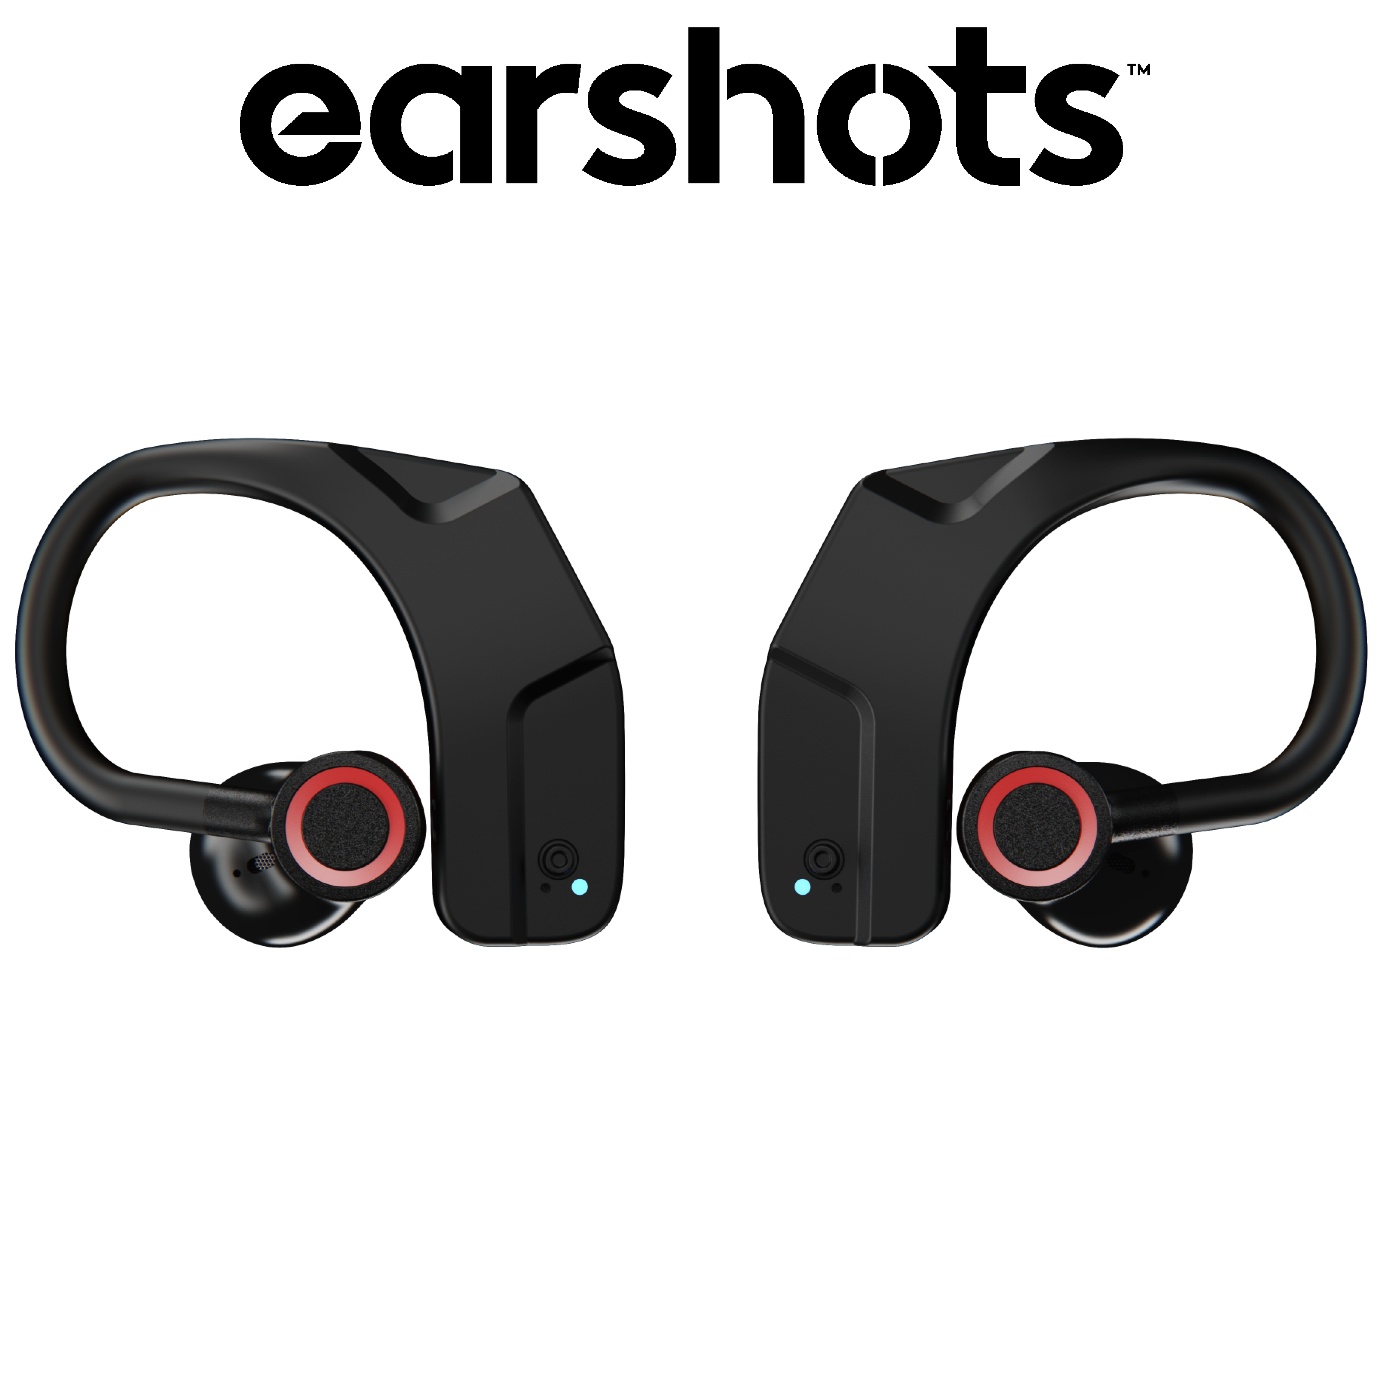 Earshots